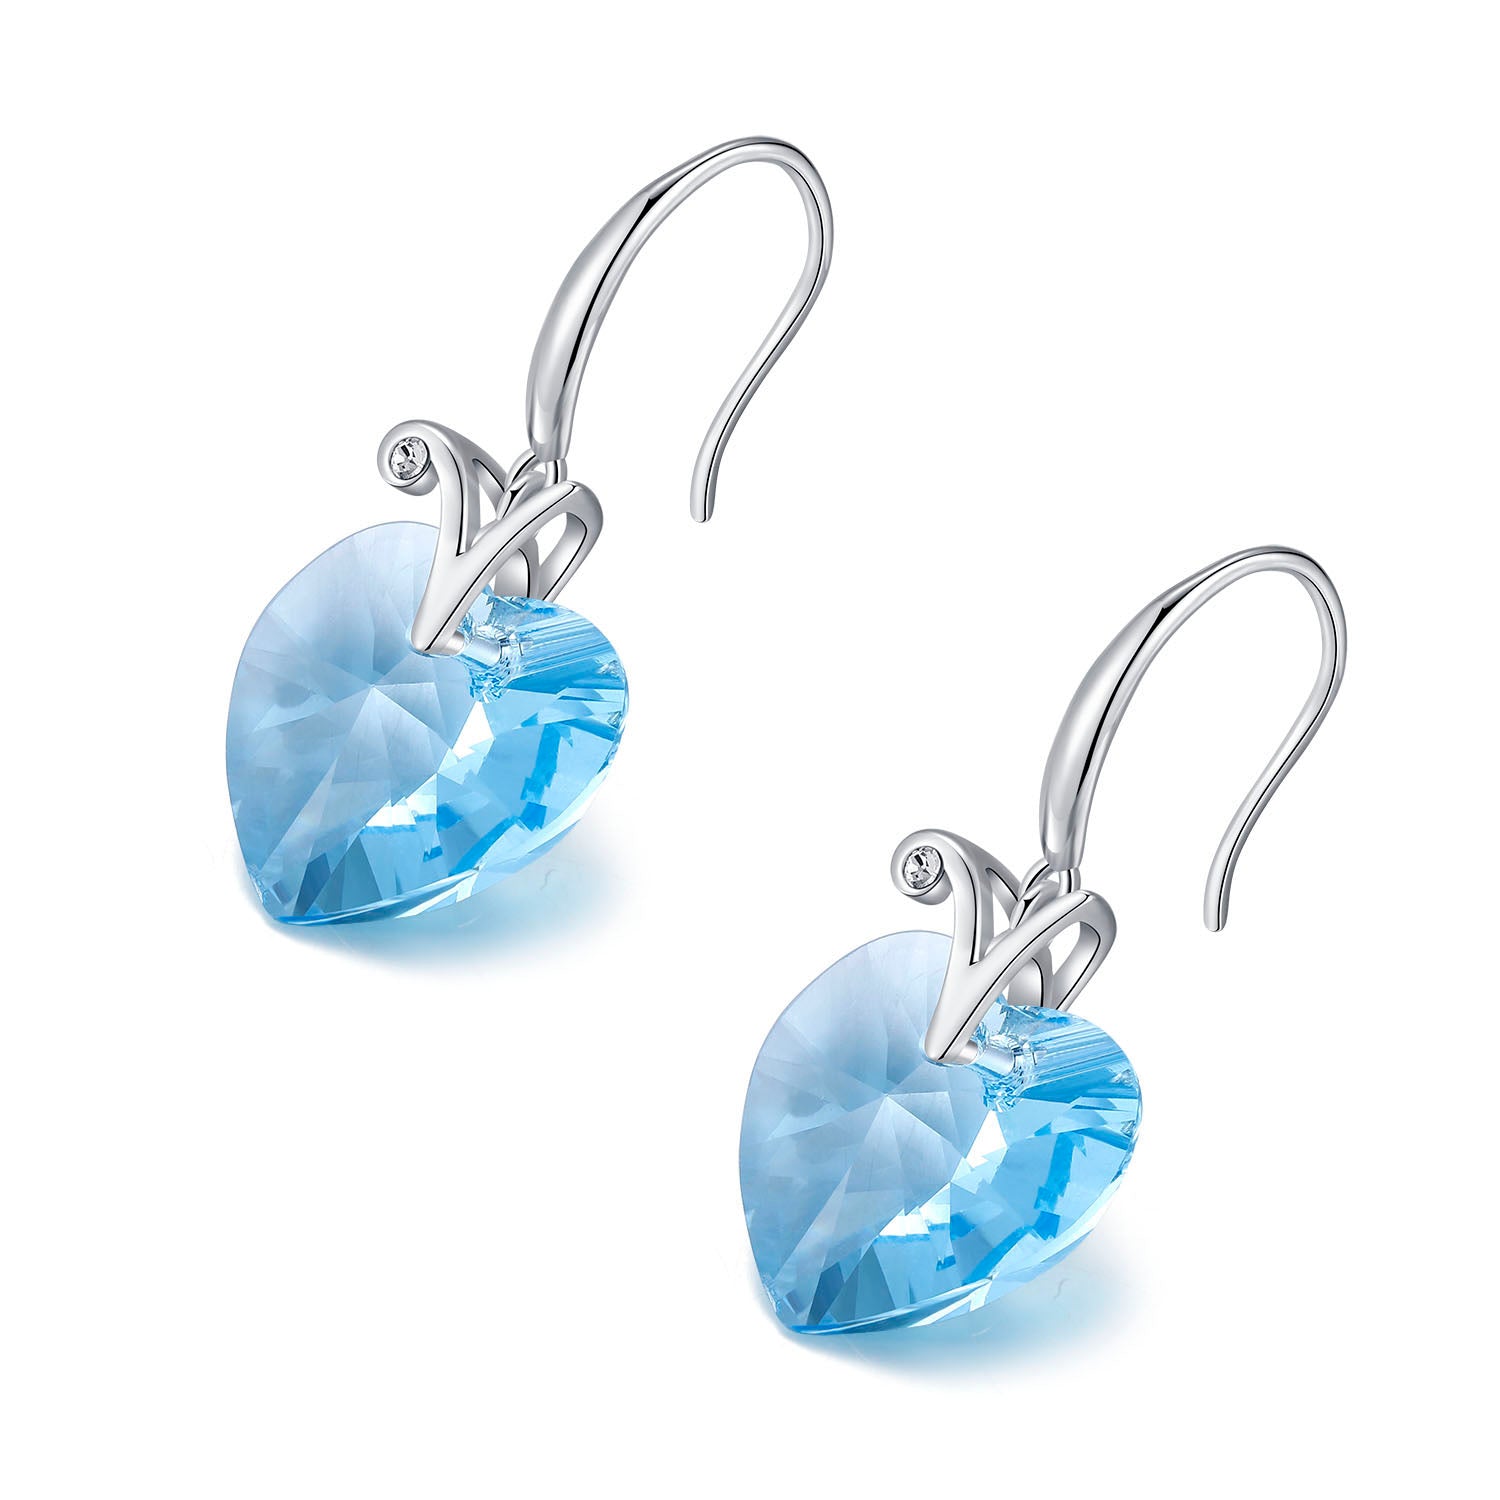 Planet J 925純藍心型女神耳環採用施華洛世奇元素水晶